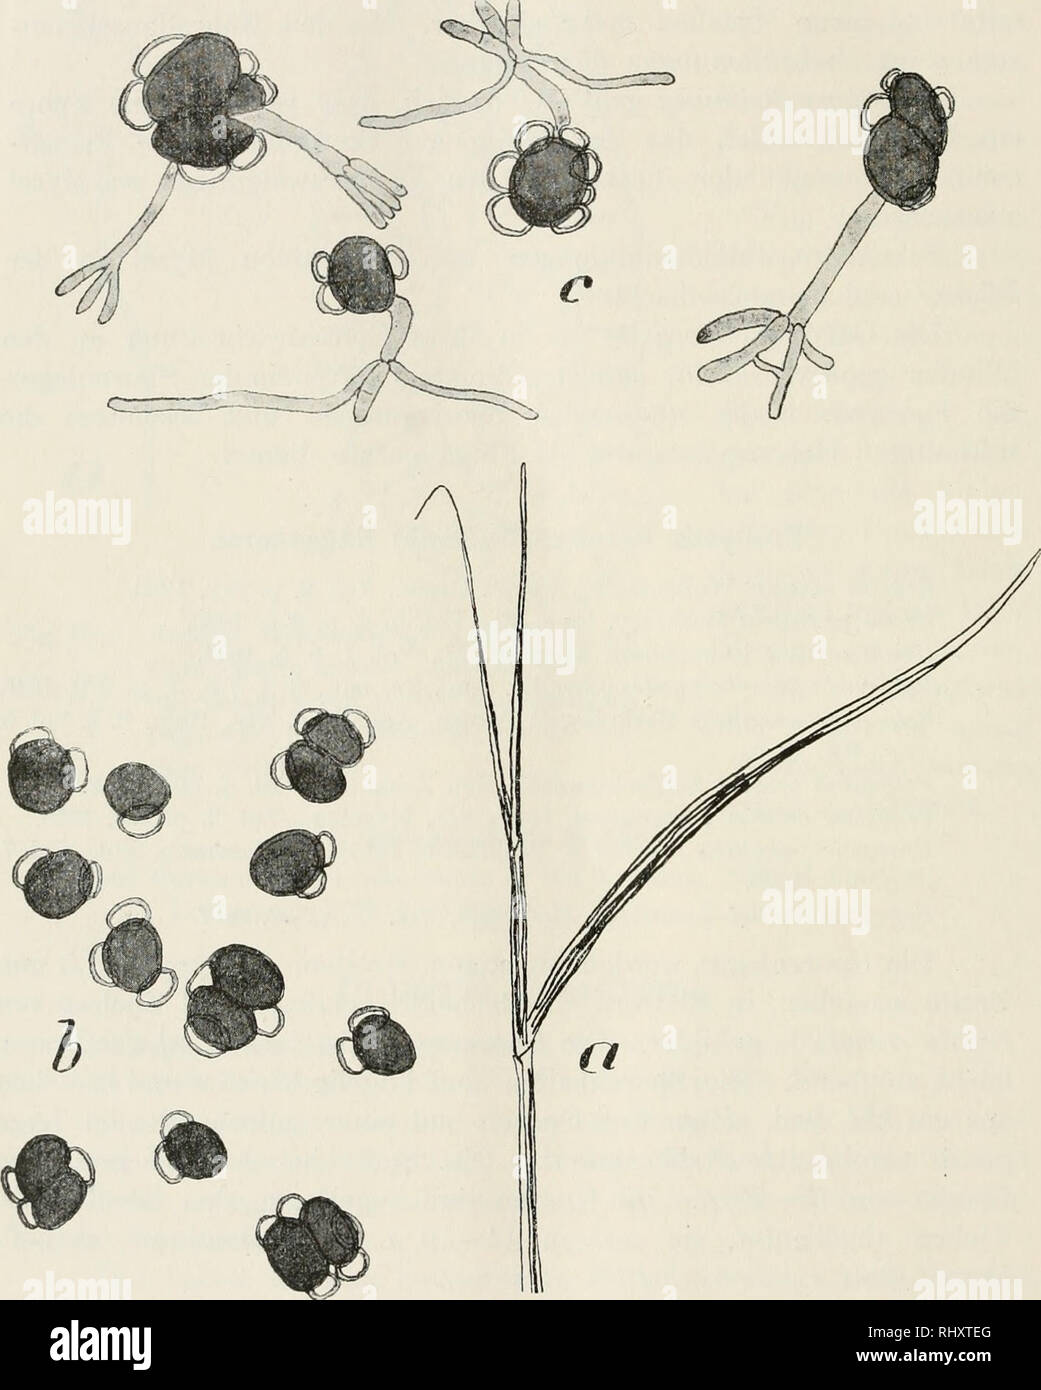 . Beitrge zur Kryptogamenflora der Schweiz. 132 meist ungegliedertes Promyzel, aus dem sich am Ende, an Stelle der Conidien, Myzelfäden entwickeln. Conidien sind keine beobachtet worden, sowohl am Promyzel wie später an den Myzelfäden.. Fig. 66 a. Seitentrieb von Seeale cerale L. mit Sporenlagern von Urocystis oc- cuUa (Wallr.) Rab. (1)! b. Sporenballen von UrociisUs occulta (Wallr.) Rab., 800! c. Gekeimte Sporen von U. occulta (Wallr.) Rab. Nach R, Wolf, Fig. 6, 7, 9, 10, Taf. VII, Bot. Zeitg., 1873.. Please note that these images are extracted from scanned page images that may have been digi Stock Photo